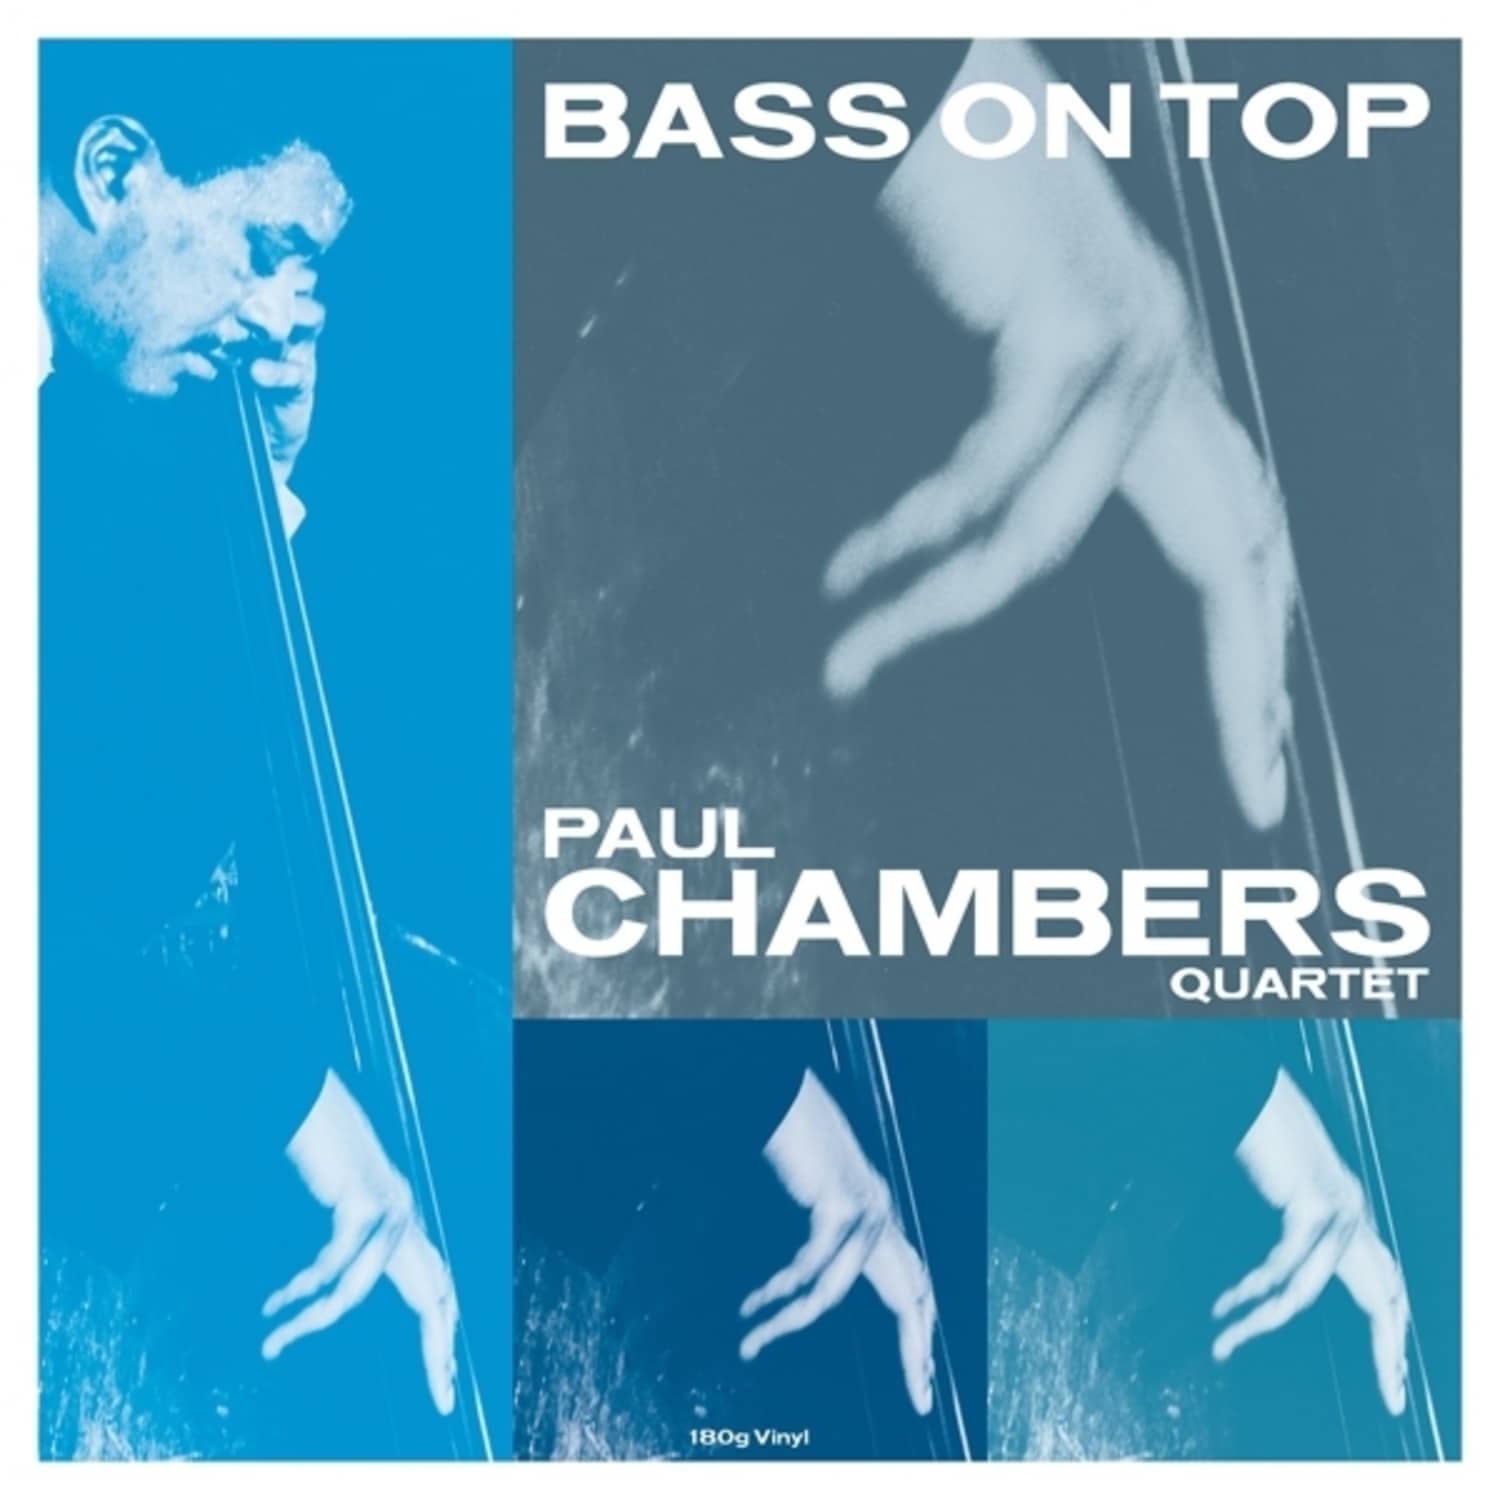  Paul Chambers - BASS ON TOP 